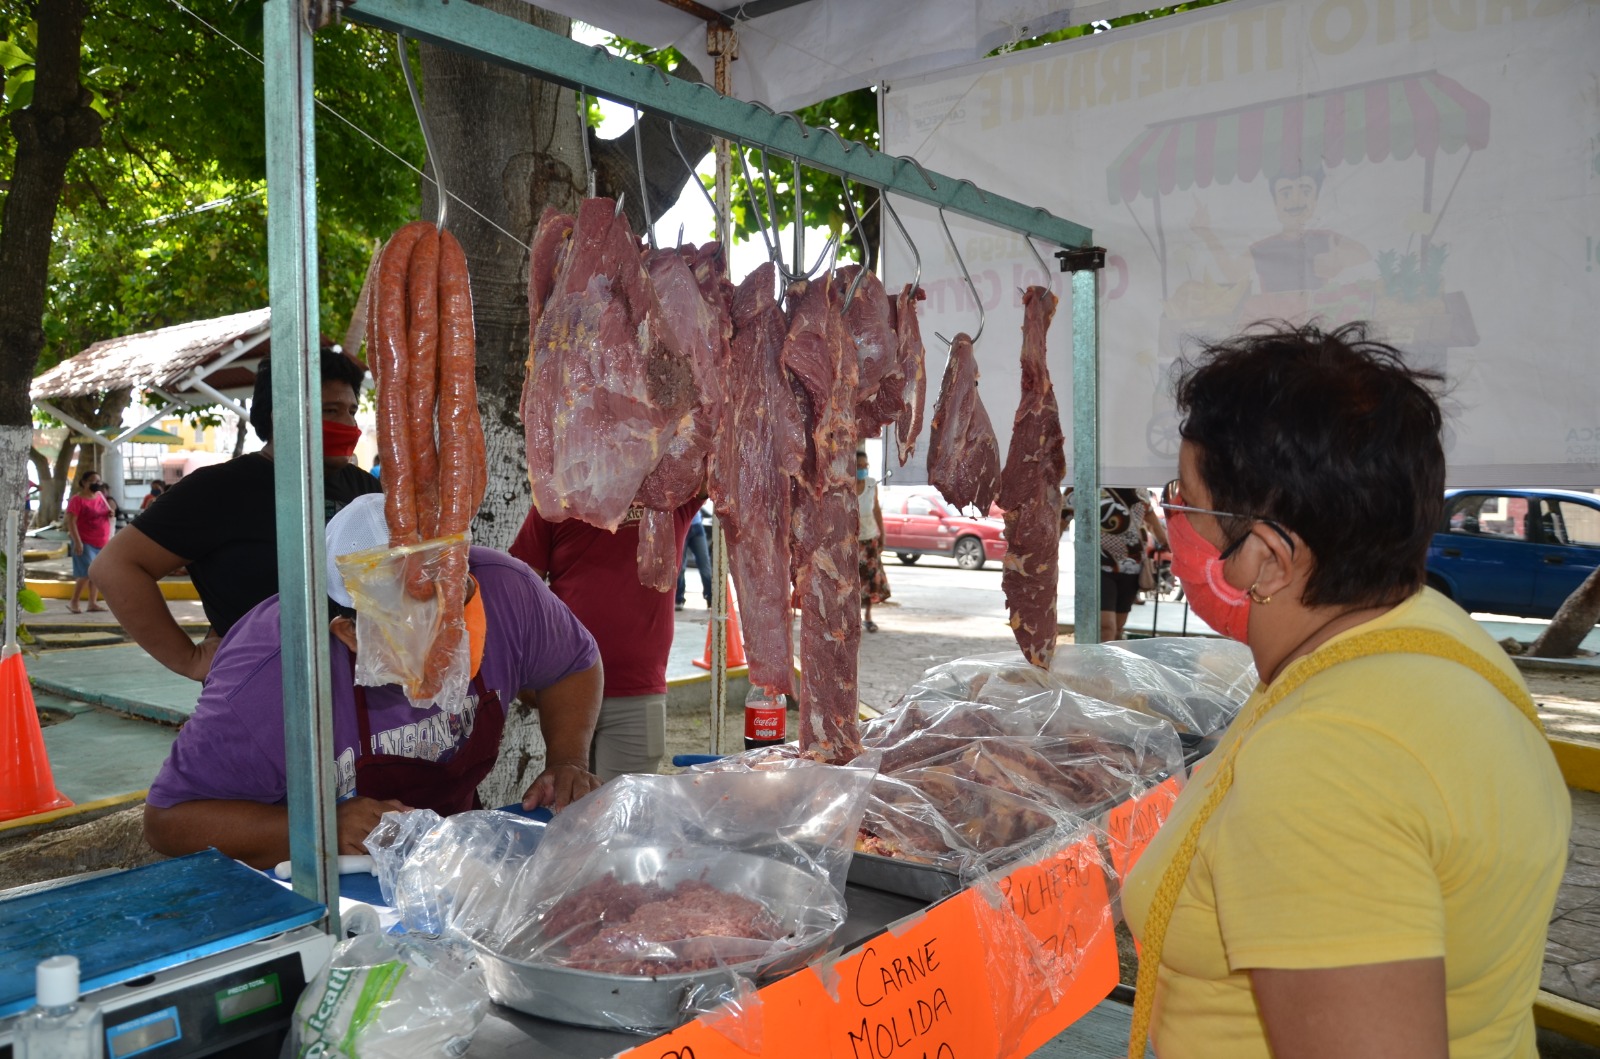 Riesgo a la salud pública en Ciudad del Carmen consumir carne de res y cerdo de dudosa procedencia